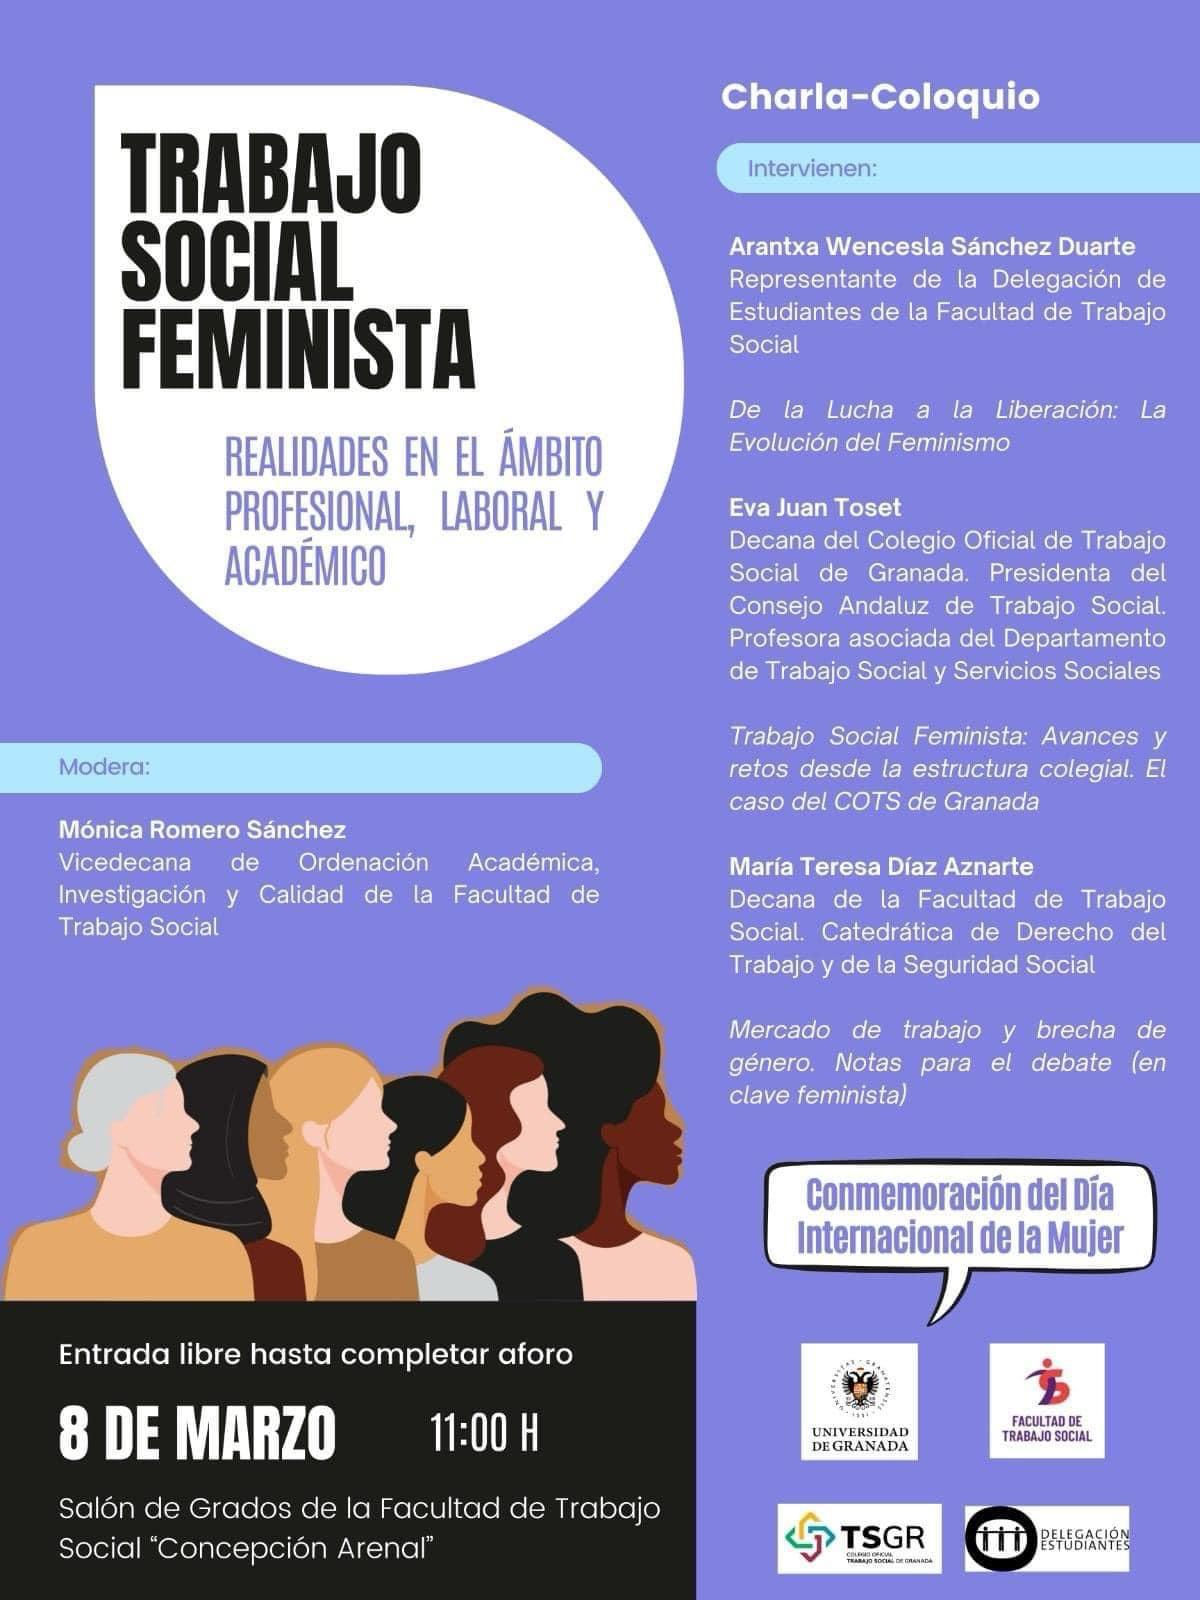 CHARLA-COLOQUIO. Trabajo Social Feminista. Realidades en el ámbito profesional, laboral y académico